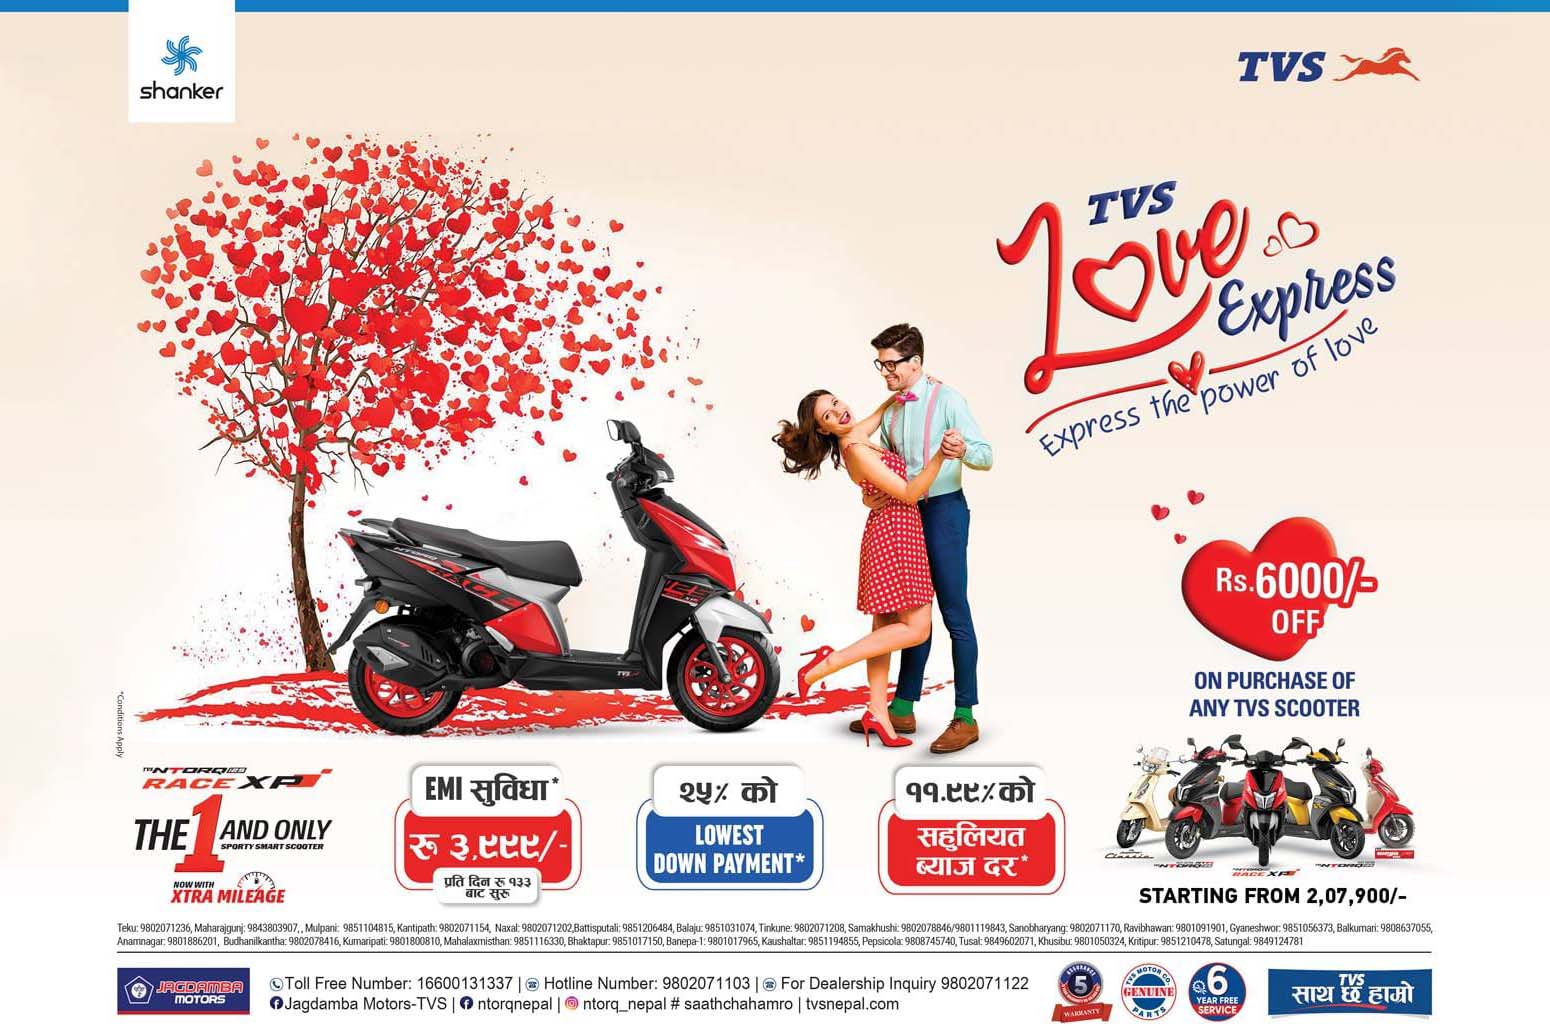 Jagdamba Motors starts Valentine’s Day promotional campaign &#8216;TVS Love Express&#8217;